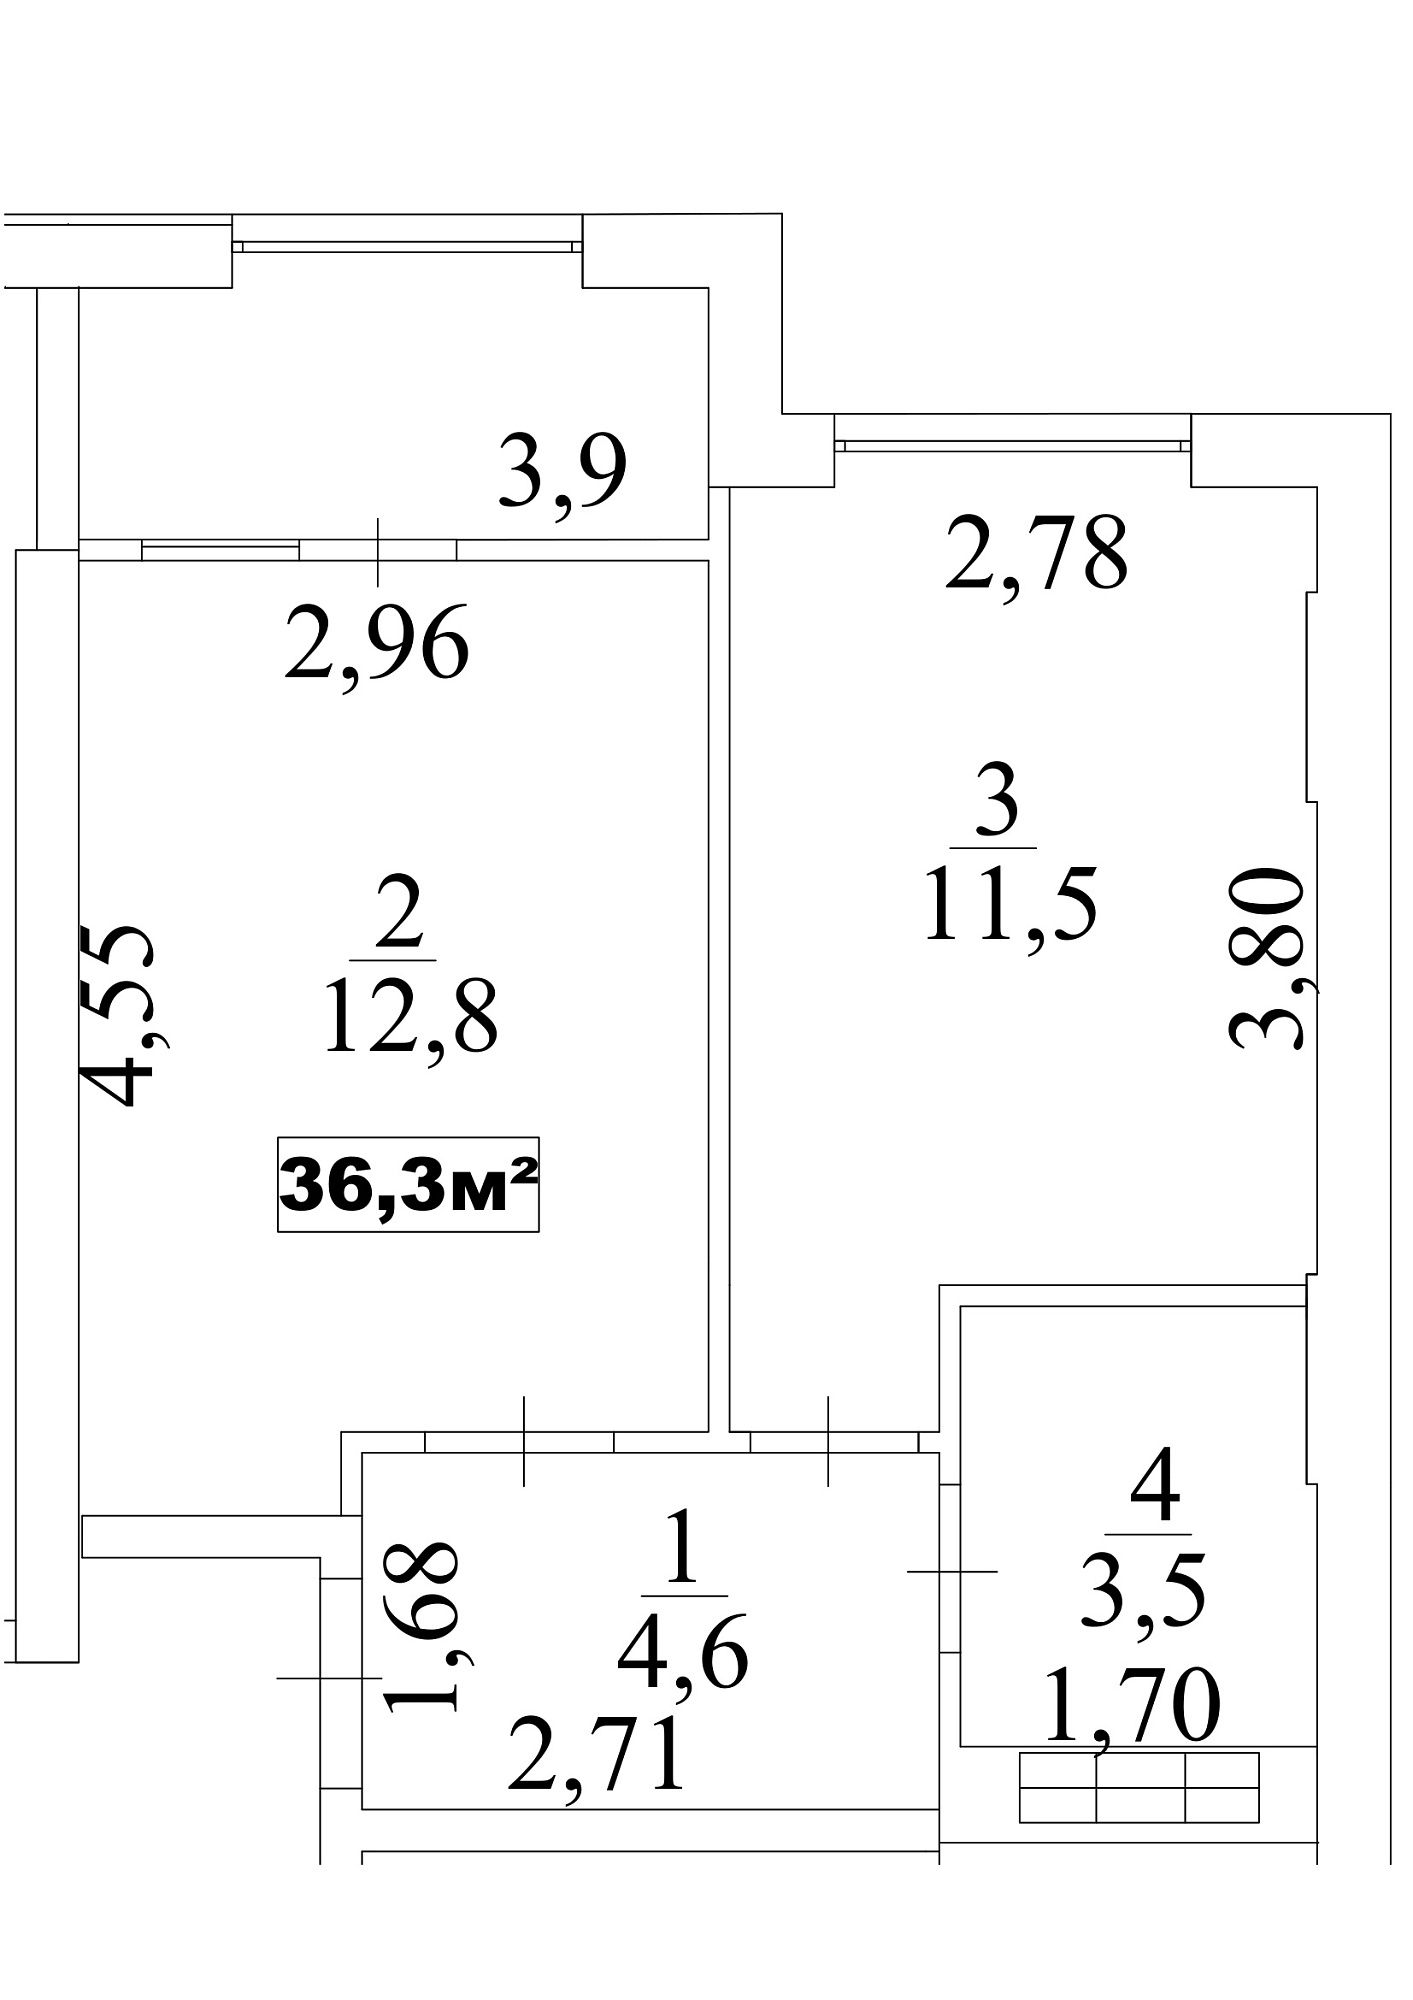 Планировка 1-к квартира площей 36.3м2, AB-10-09/0079б.